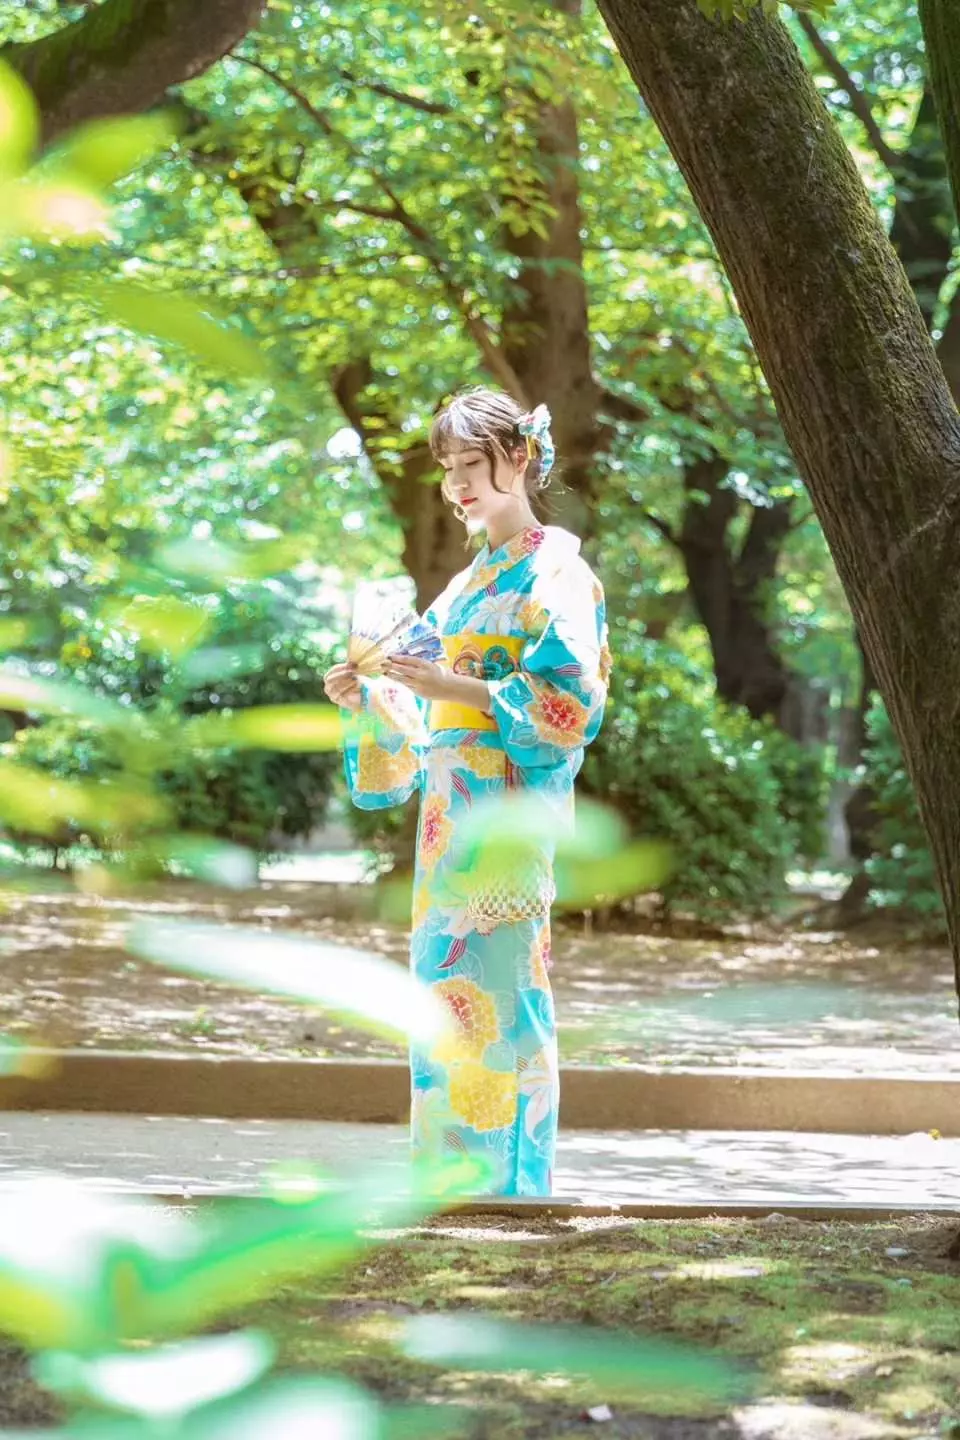 日本东京| 浅草和装工房雅夏季浴衣、外拍摄影- KKday